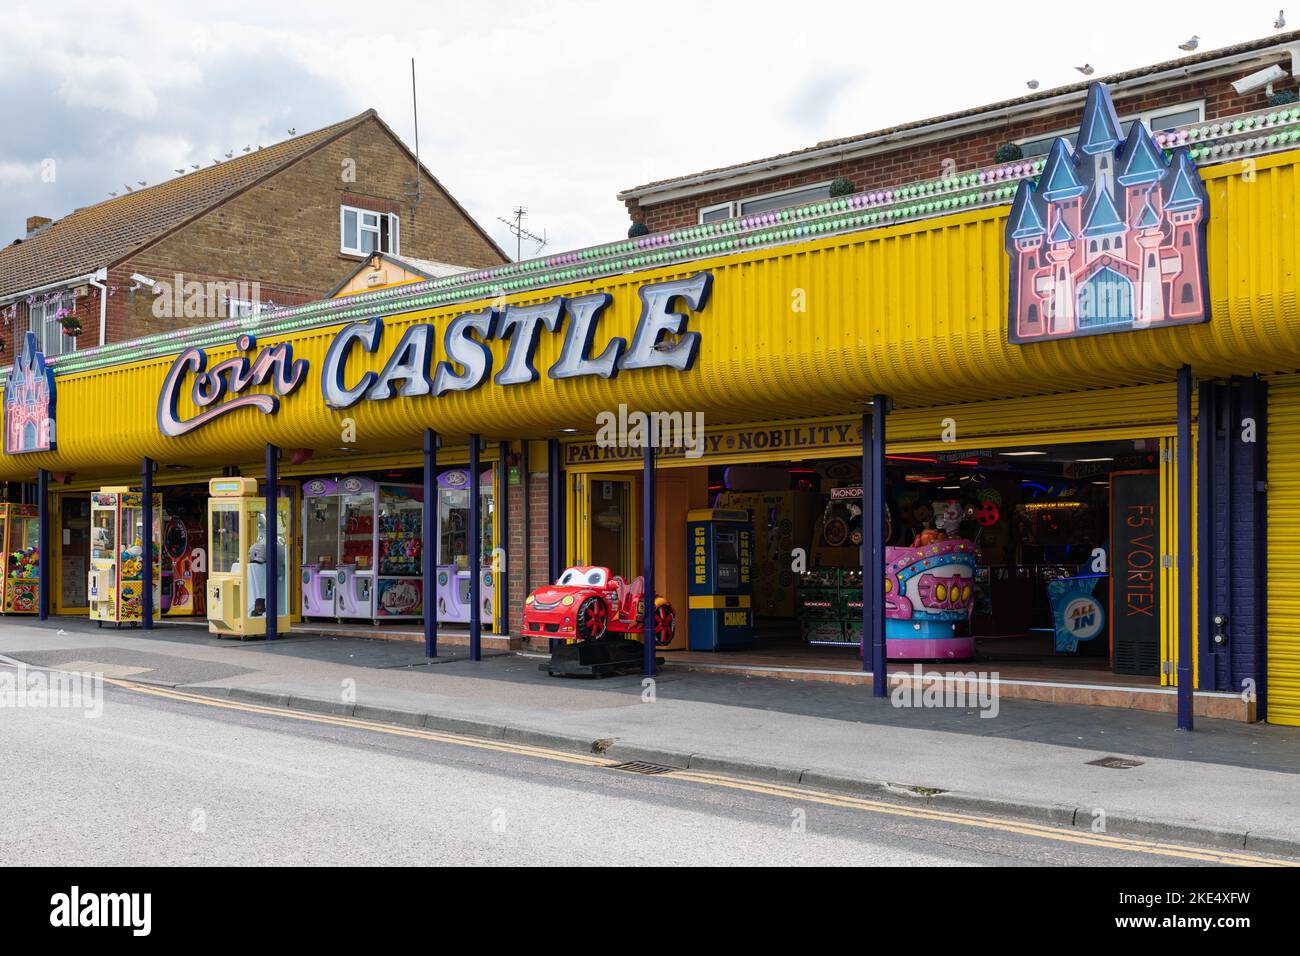 Coin Castle Amusement Arcade, The Promenade, Leysdown on Sea, Isla de Sheppey, Kent, Inglaterra, Reino Unido Foto de stock